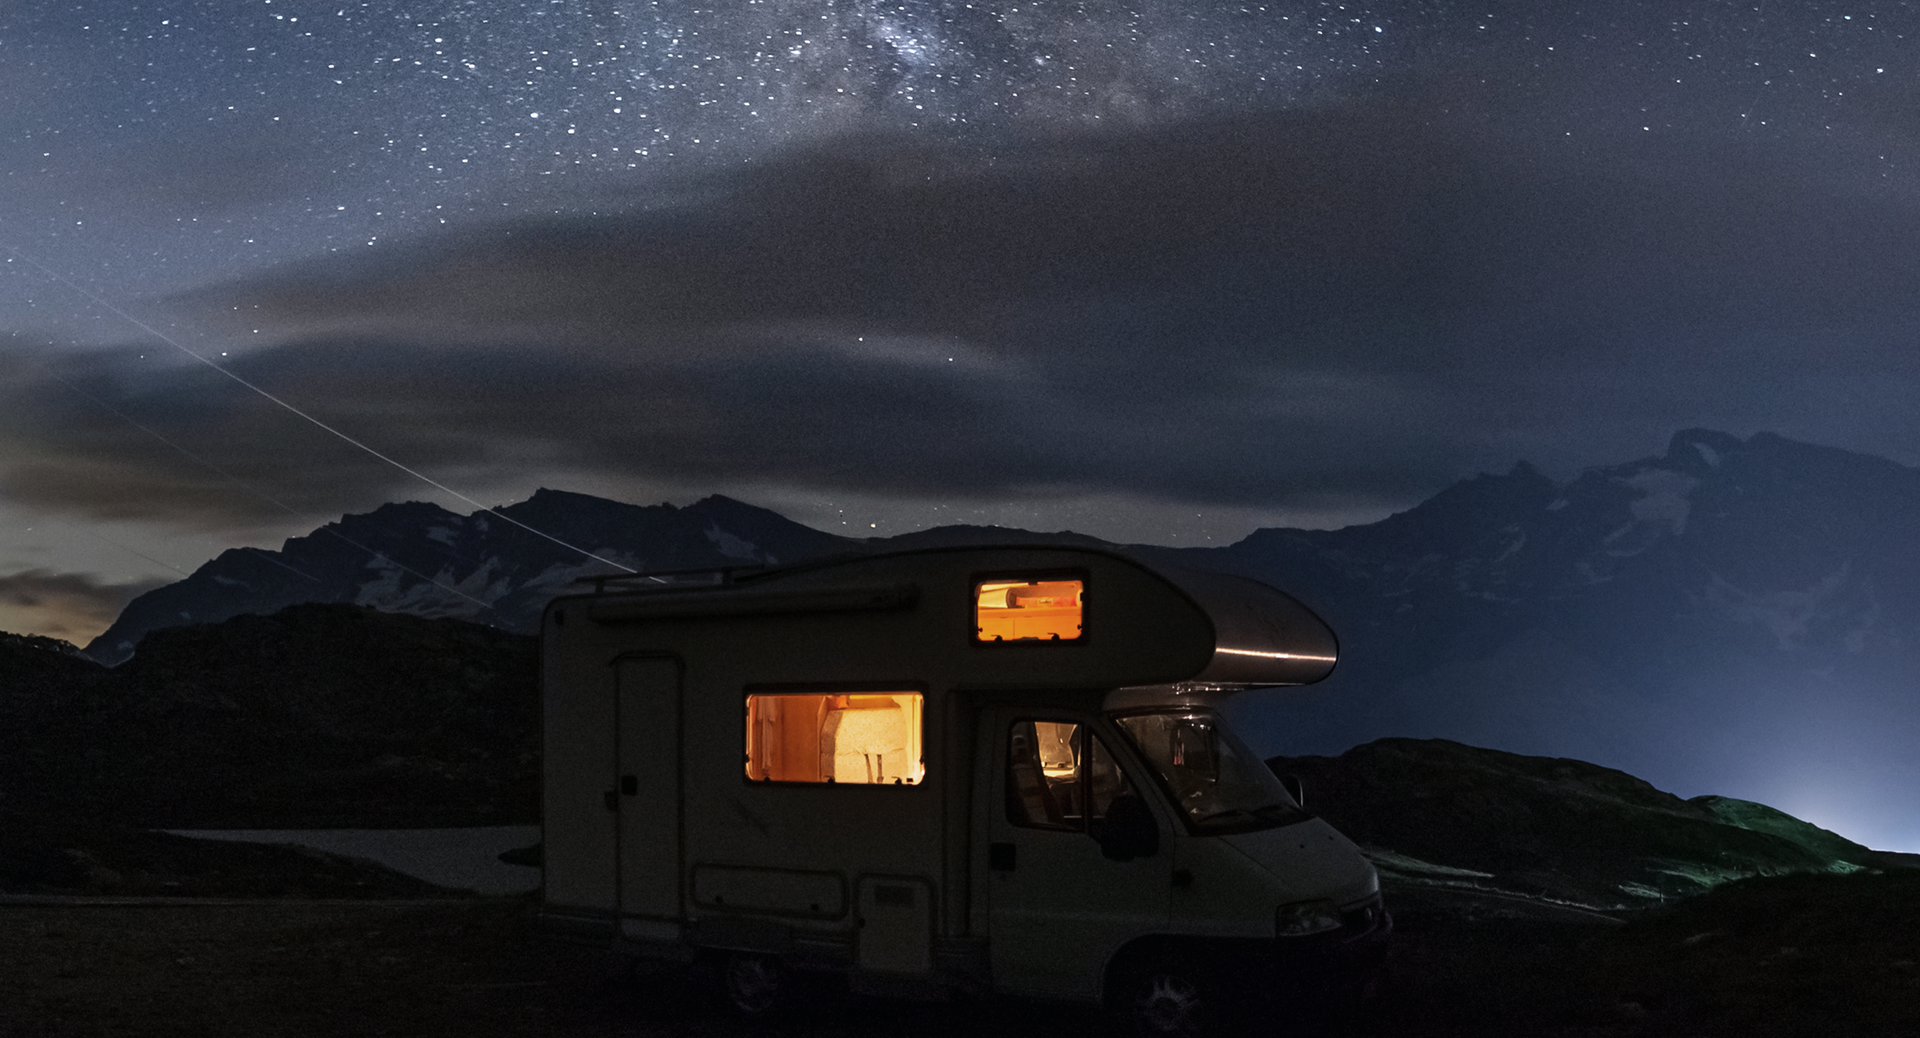 Wohnmobil vor einer Bergkulisse in der Nacht.